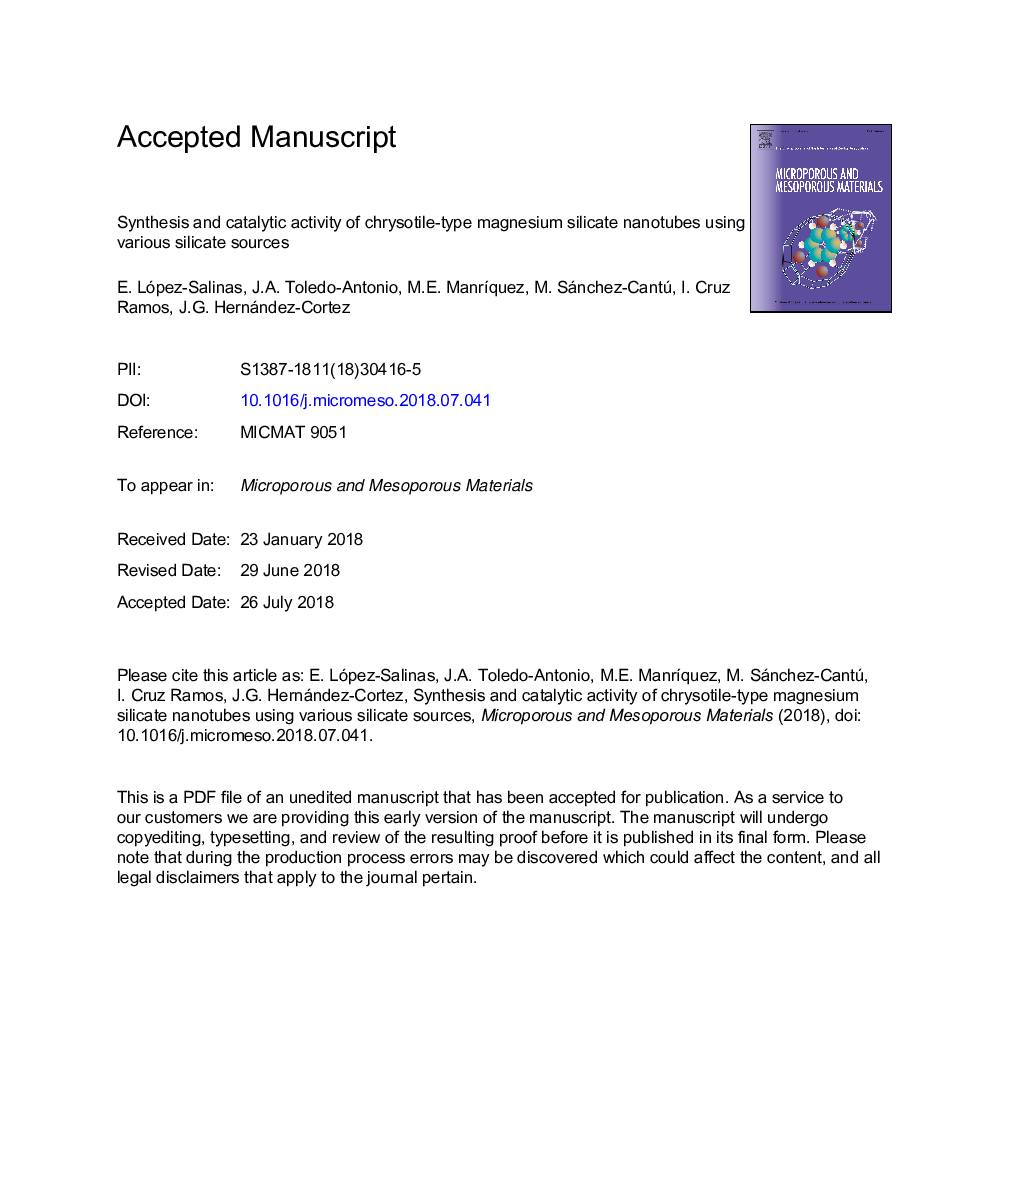 سنتز و فعالیت کاتالیزوری نانولوله های سیلیکات منیزیم کریستوتیل با استفاده از منابع سیلیکاتی مختلف